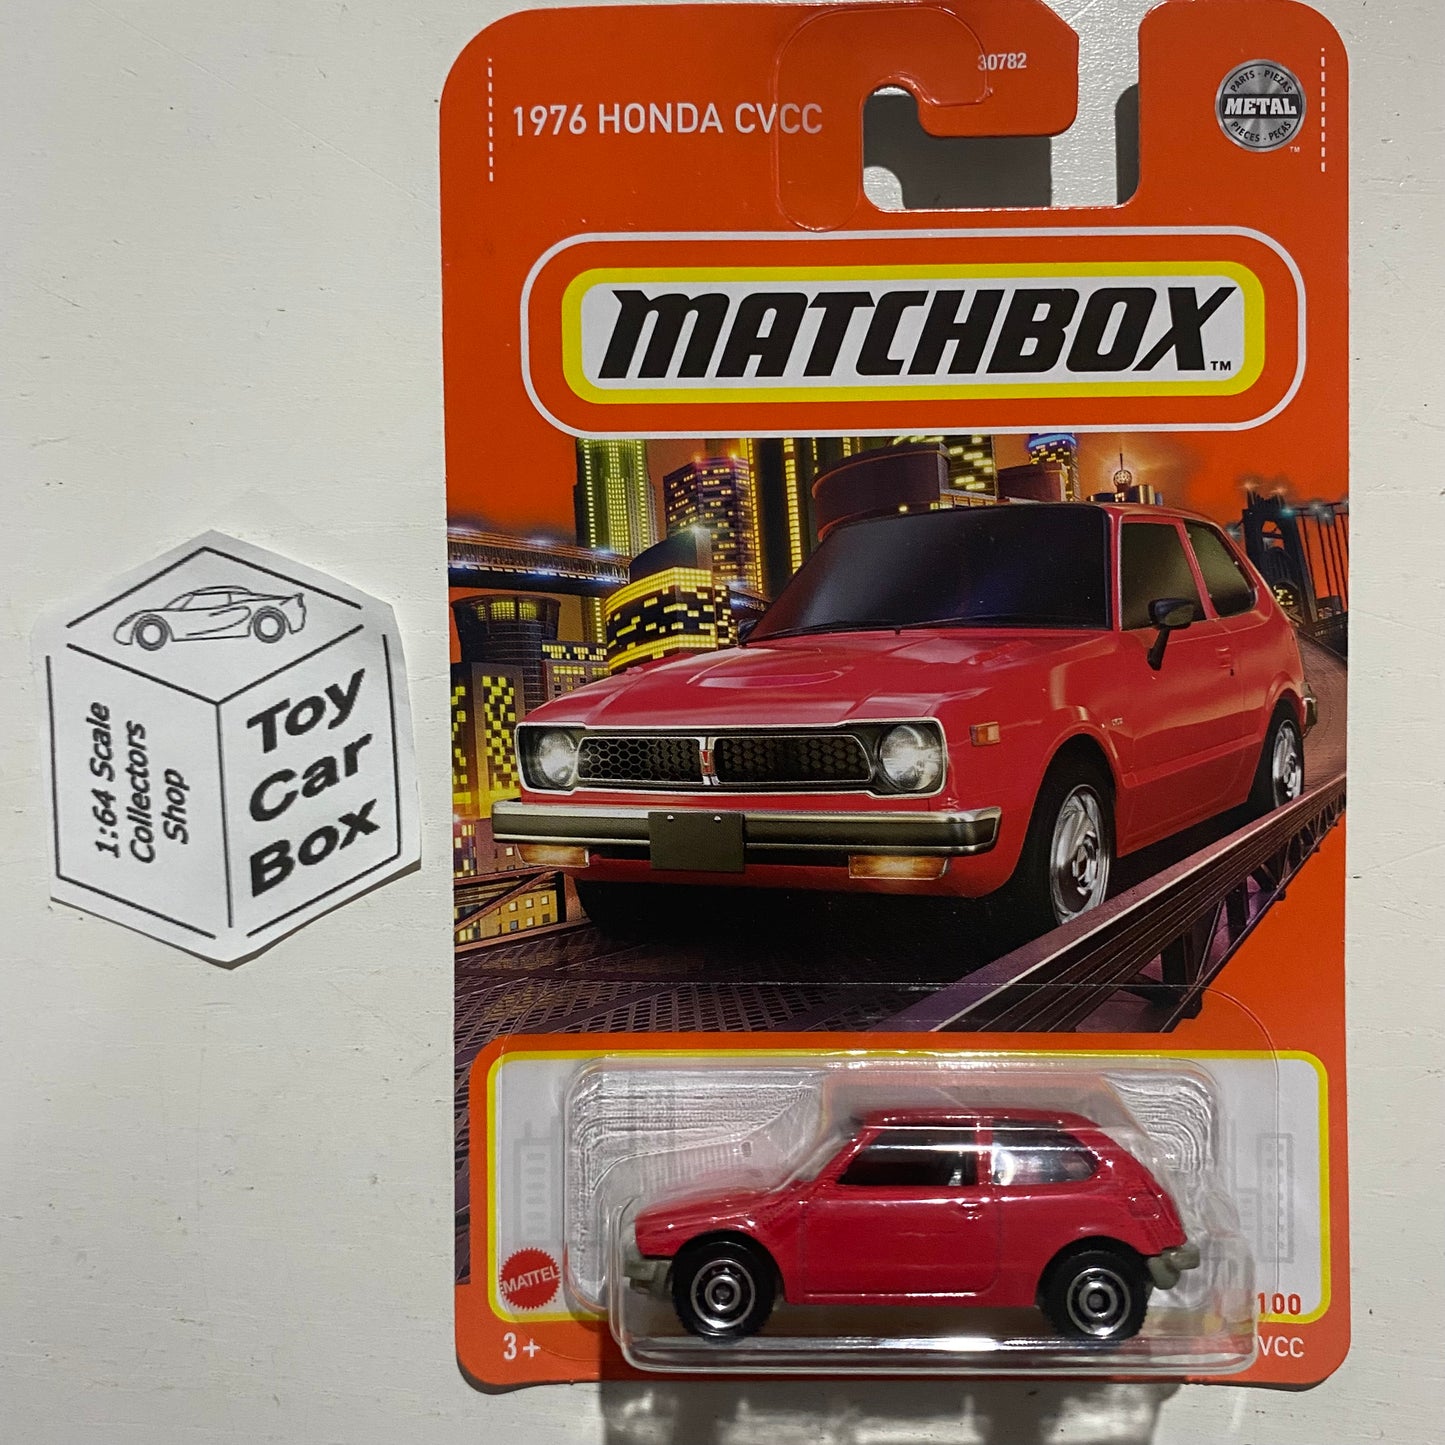 2022 MATCHBOX #21 - 1976 Honda Civic CVCC (Red - Long Card) B95g